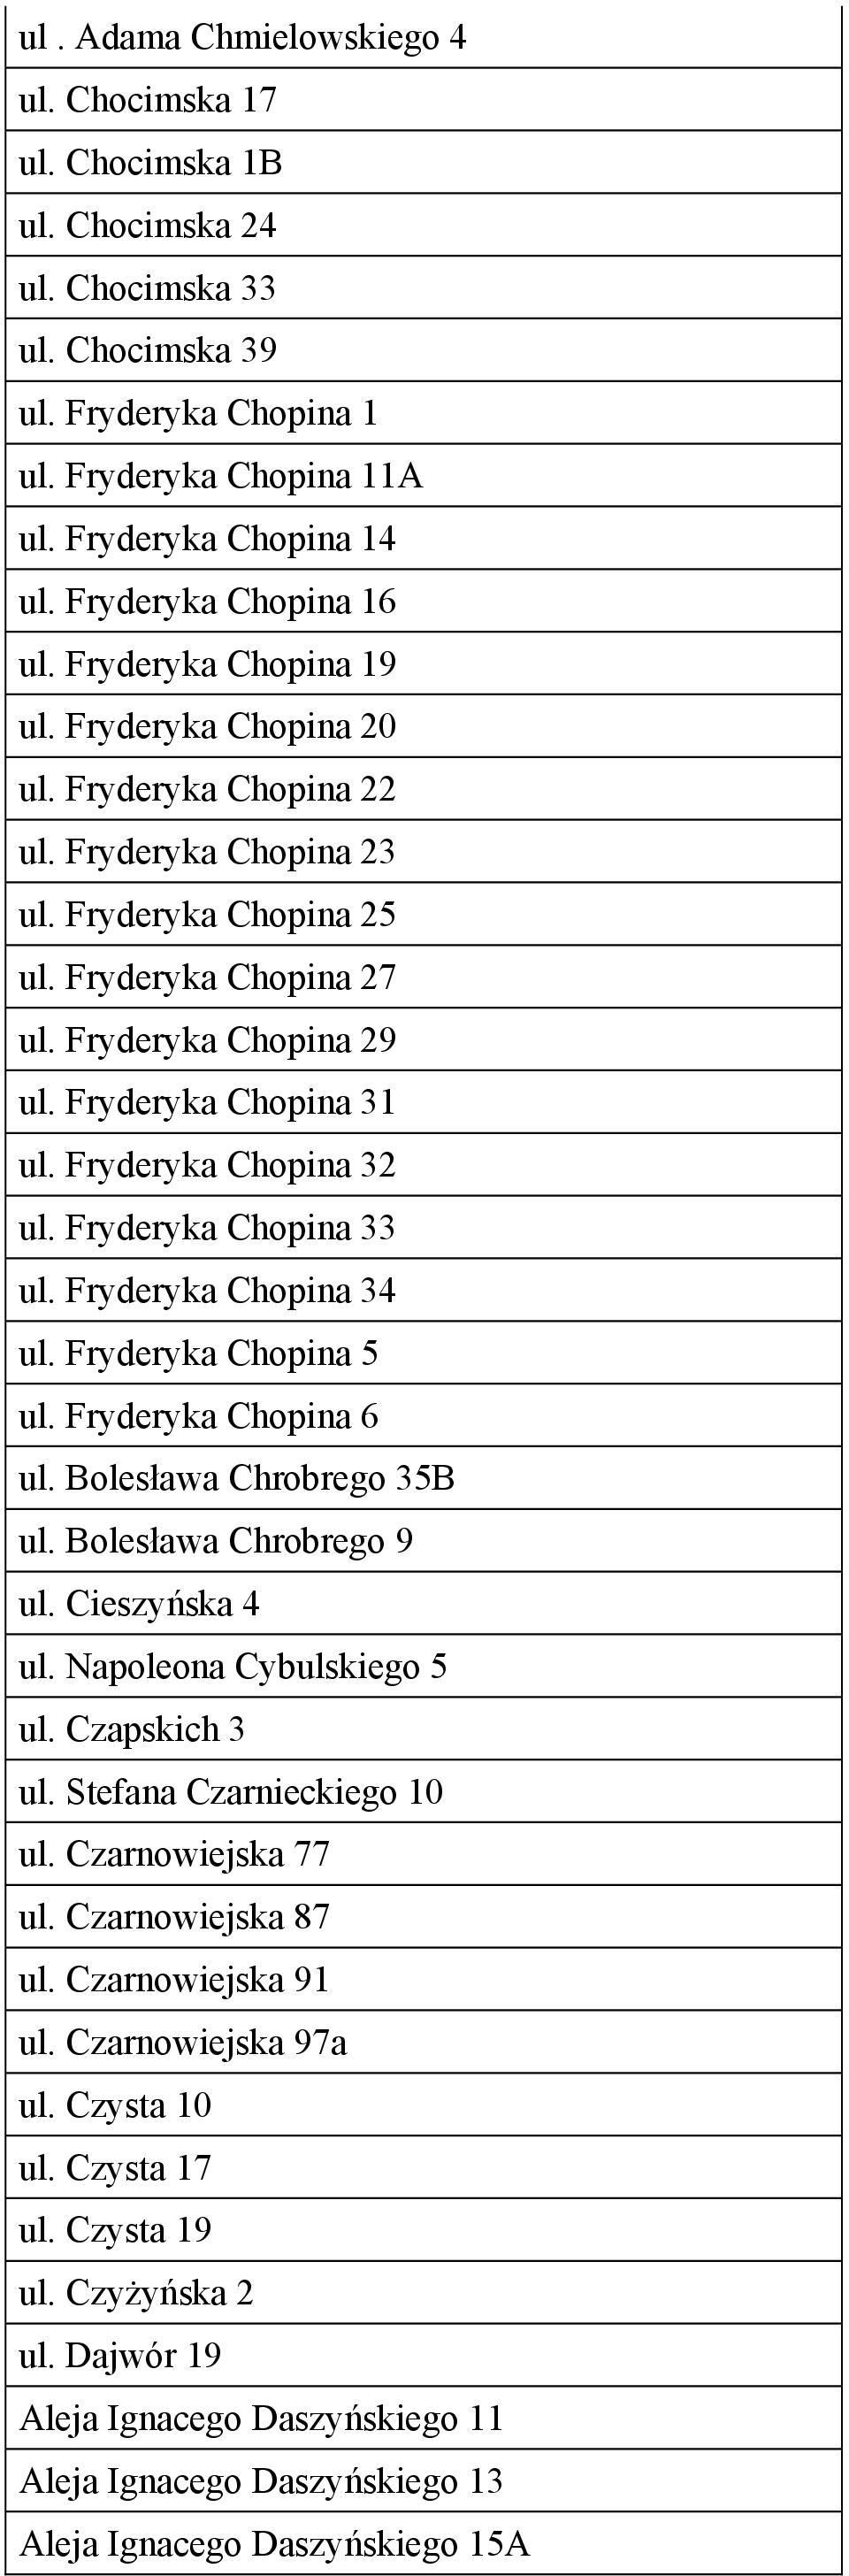 Fryderyka Chopina 31 ul. Fryderyka Chopina 32 ul. Fryderyka Chopina 33 ul. Fryderyka Chopina 34 ul. Fryderyka Chopina 5 ul. Fryderyka Chopina 6 ul. Bolesława Chrobrego 35B ul.